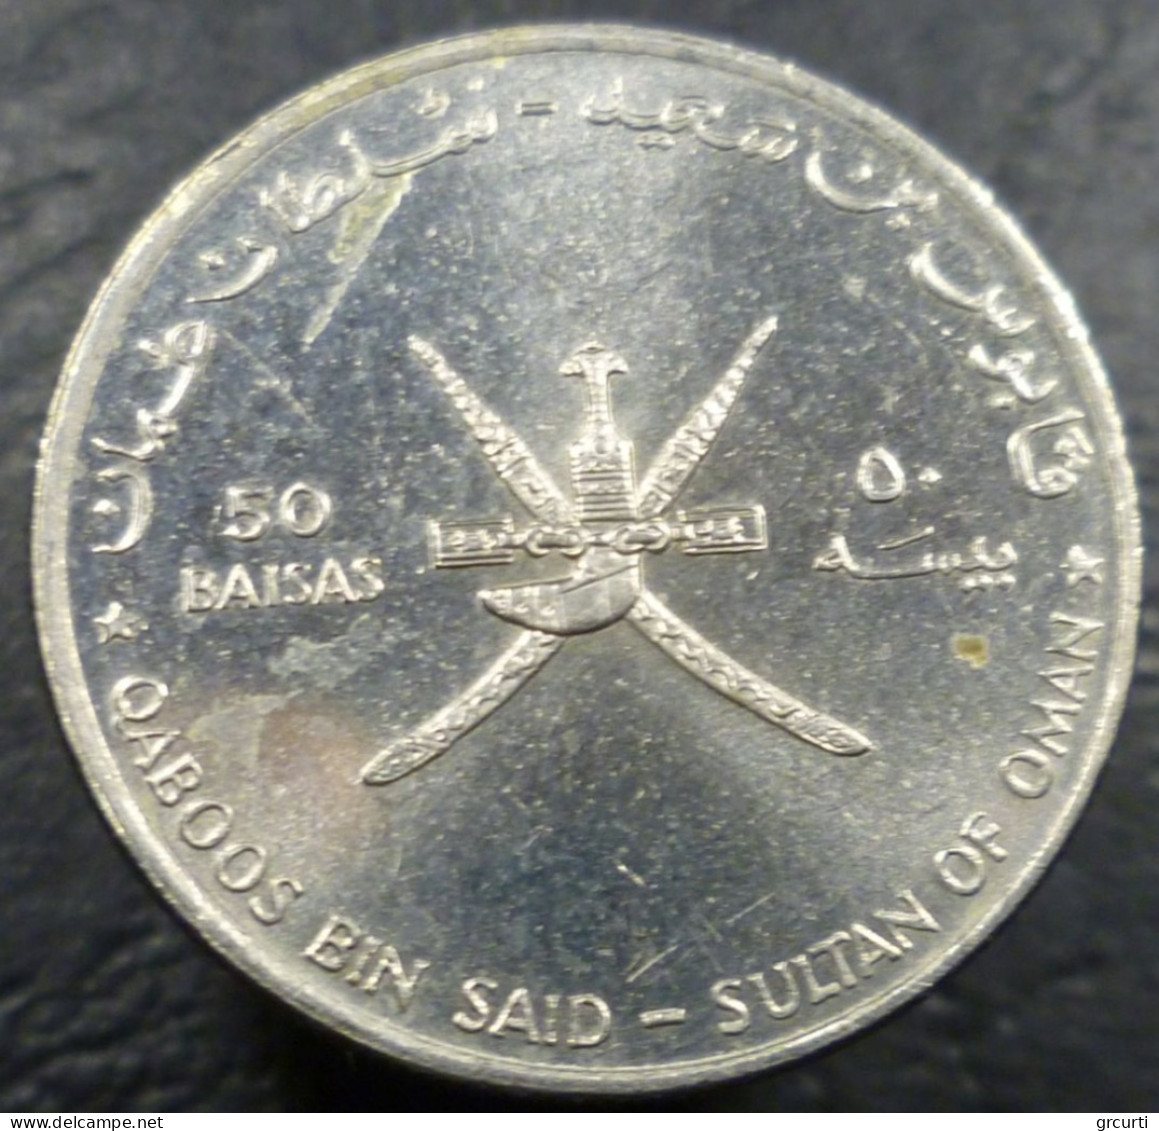 Oman - 50 Baisa 1995 - 50° Nazioni Unite Per La Pace - KM# 95 - Oman